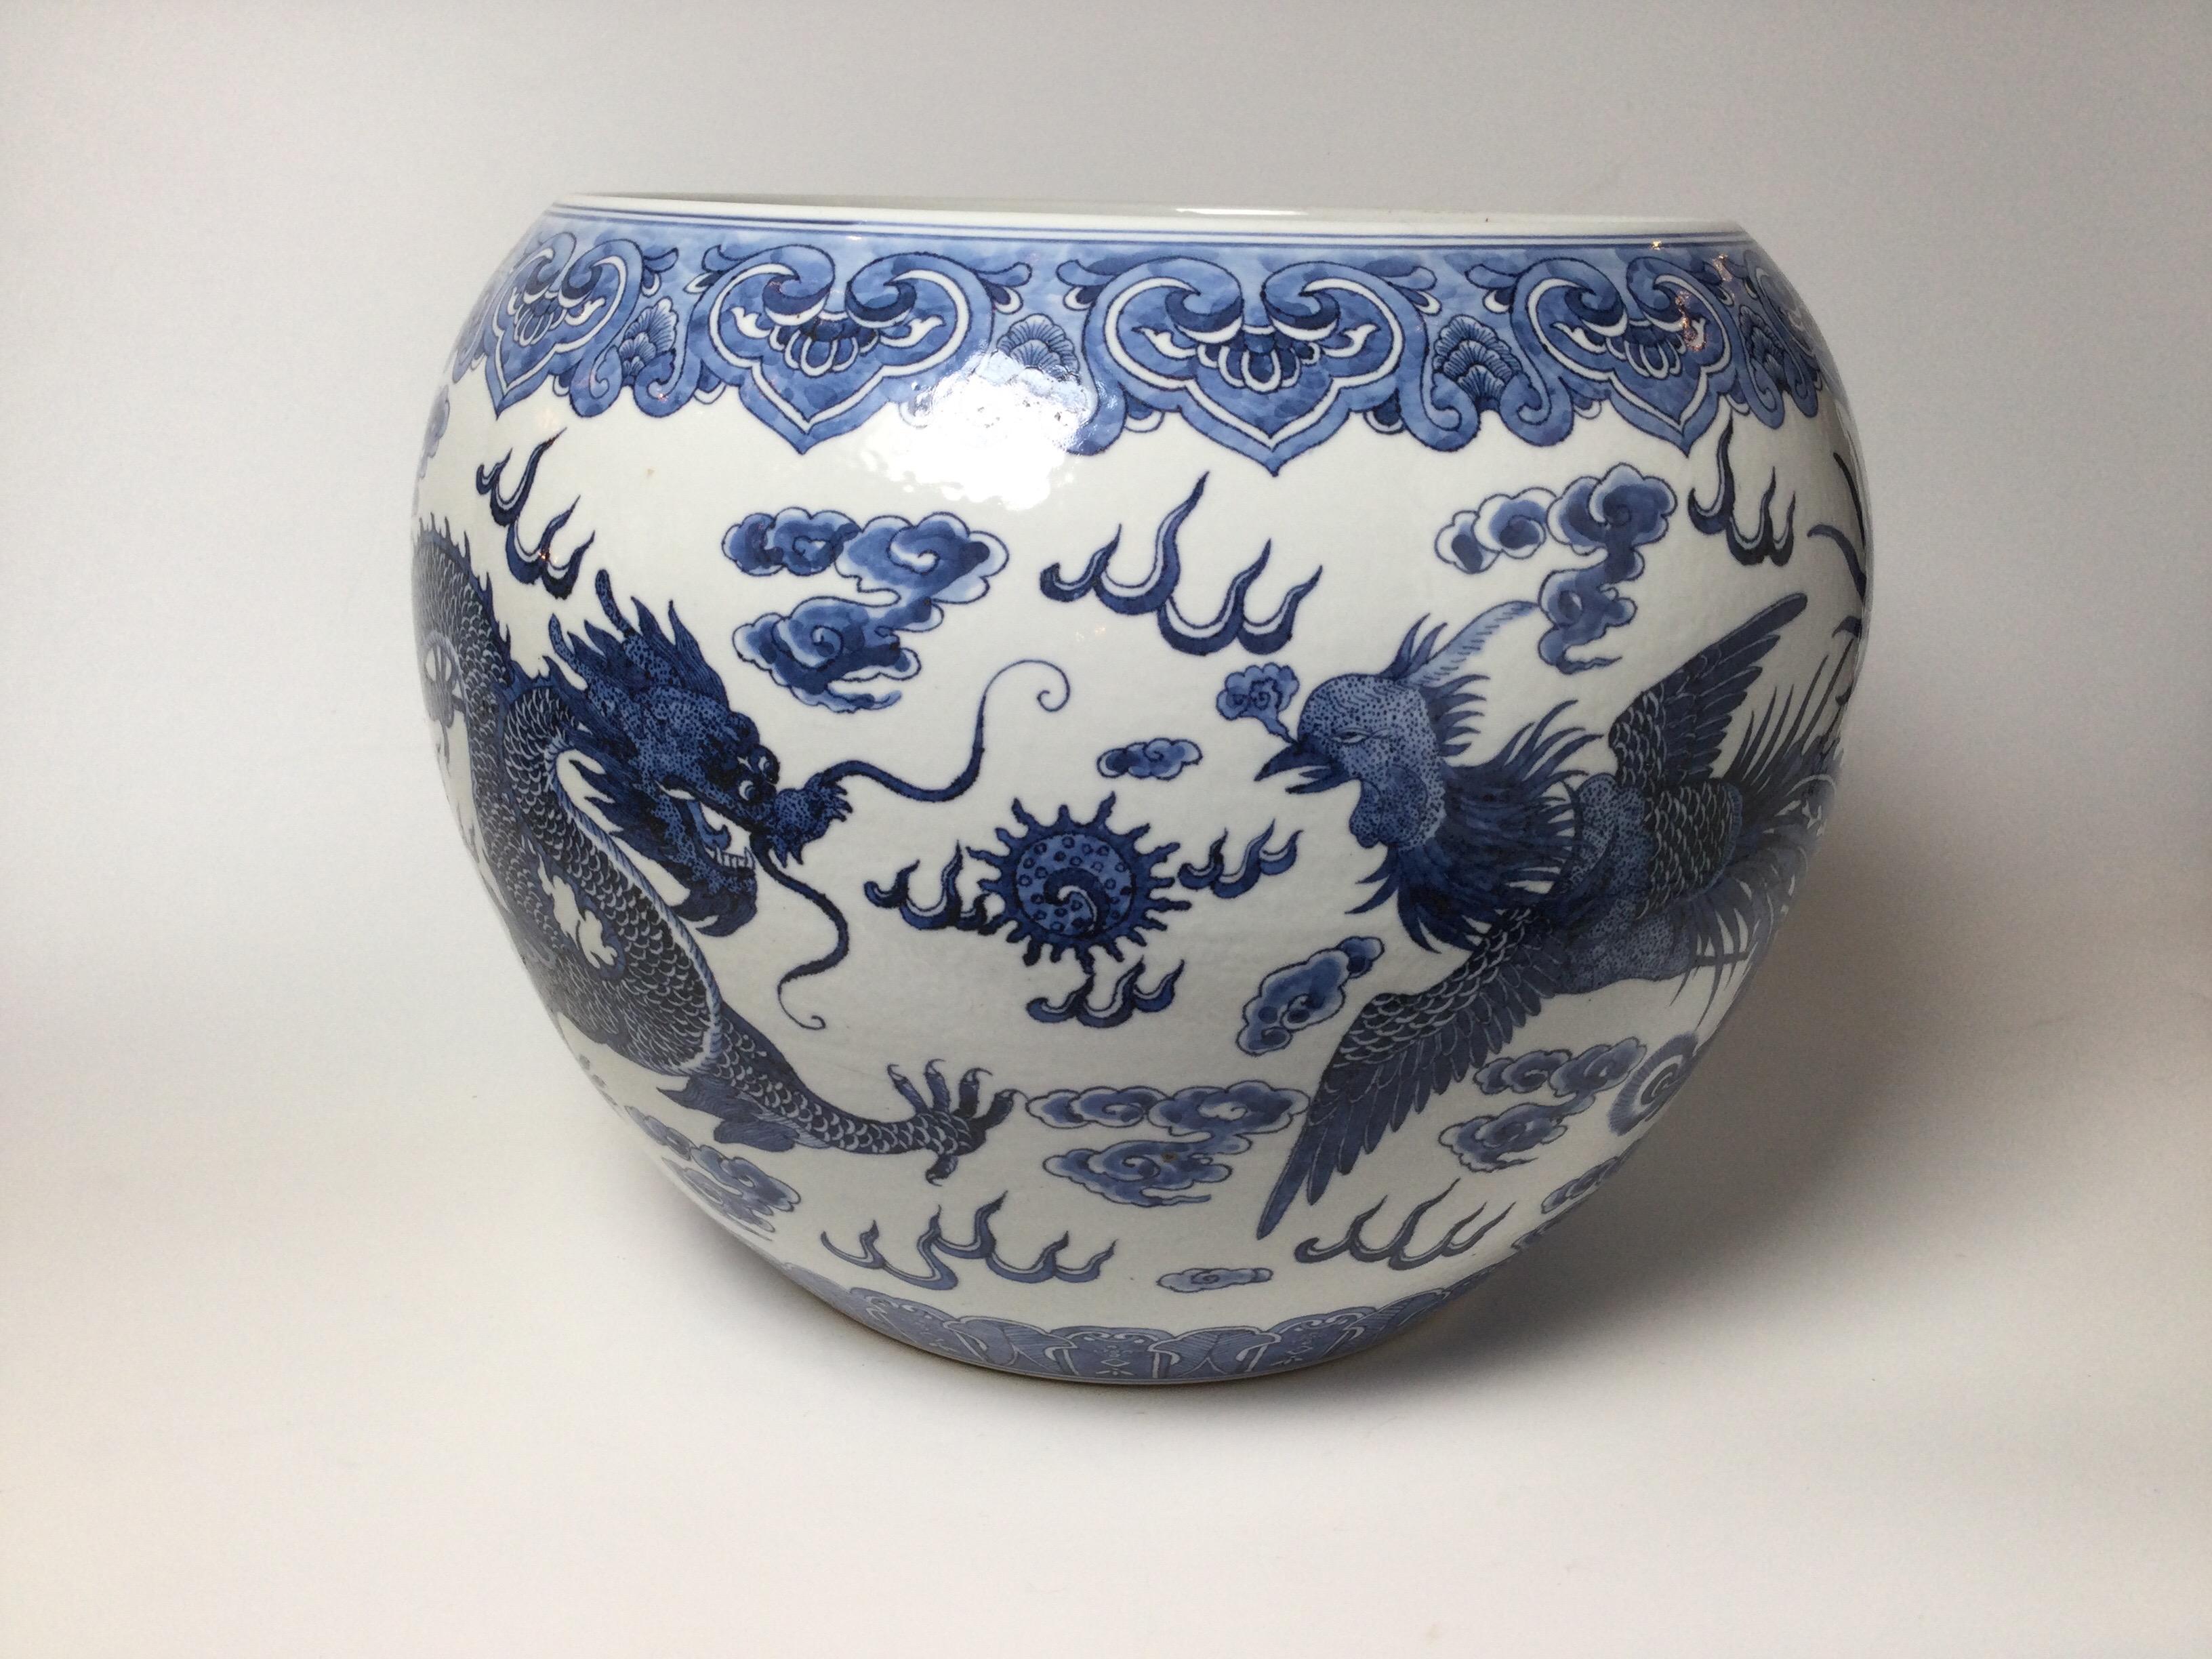 Jardinière classique chinoise en porcelaine bleu et blanc avec décor peint à la main au cobalt. La porcelaine blanche à décor peint de dragon et d'oiseau phénix. Dimensions : 14,5 pouces de diamètre, 12 pouces de hauteur.